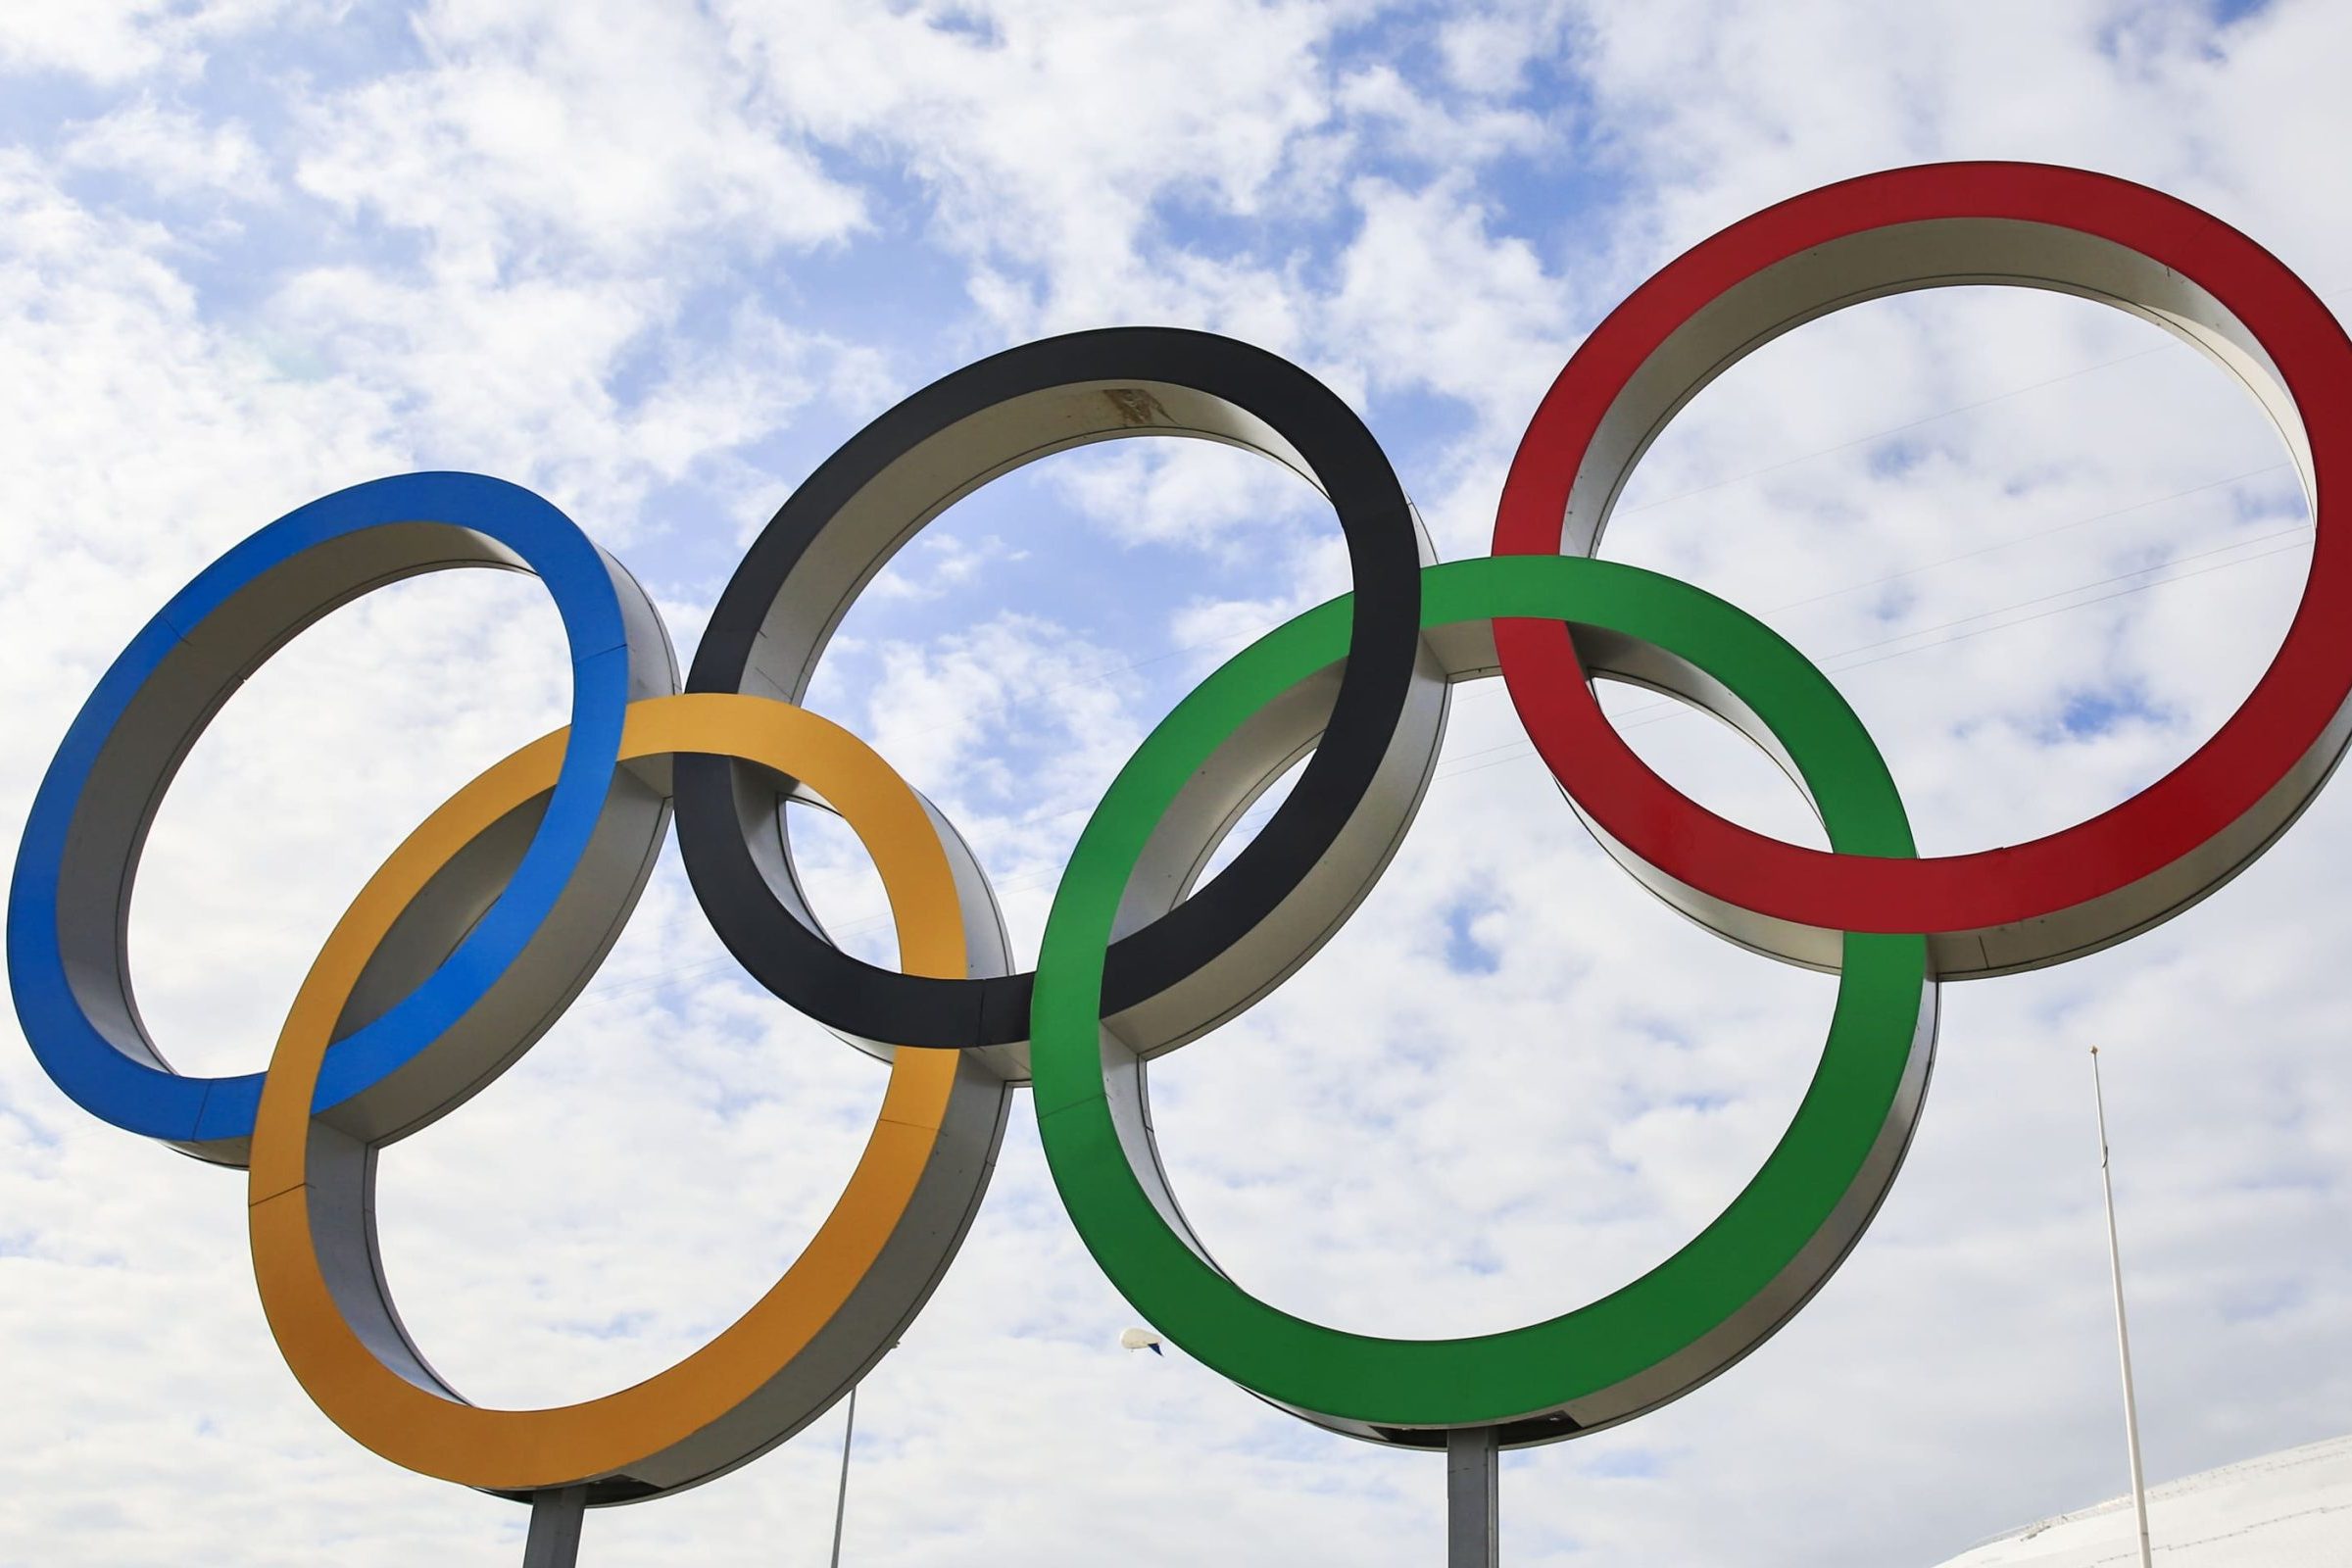 Օլիմպիական և օլիմպիական ընտանիքի մարզաձևերի ազգային հավաքականների անդամներն անվճար բուժօգնություն կստանան